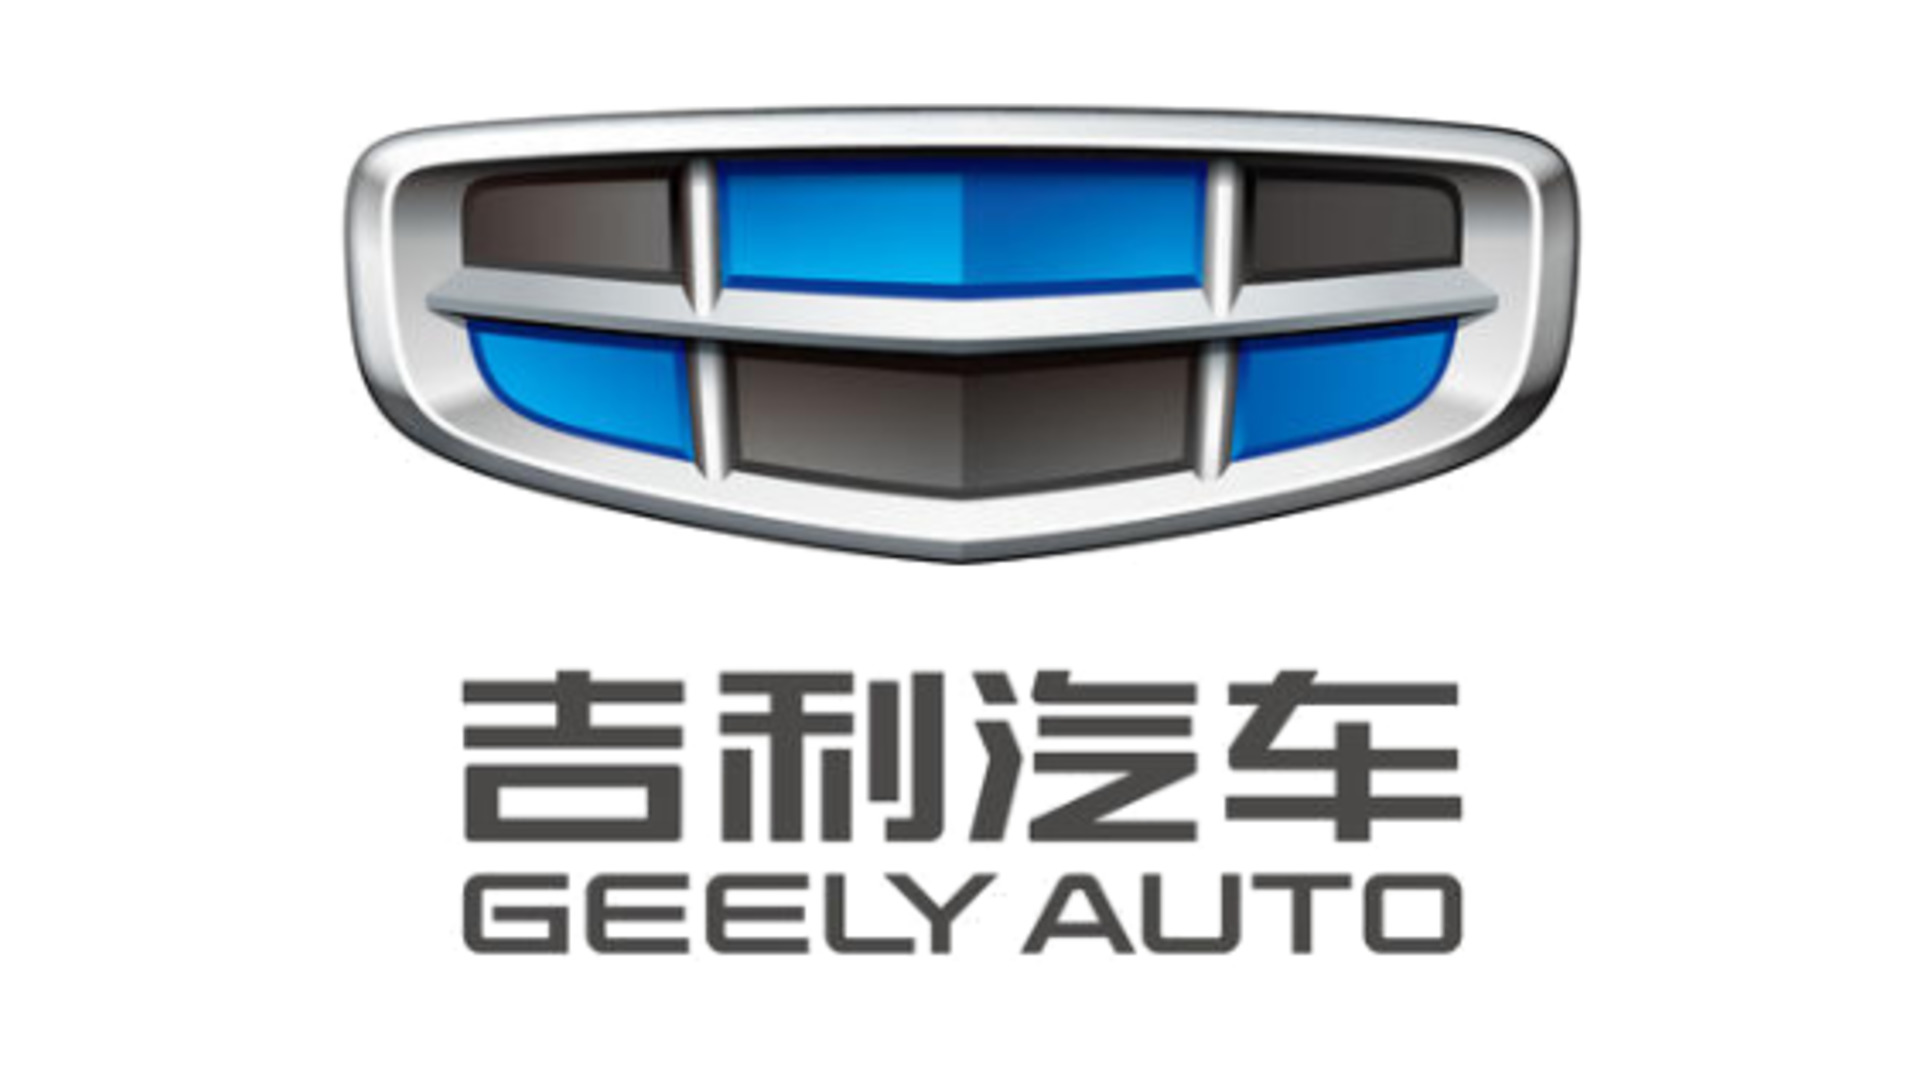 Geely เริ่มการผลิตดาวเทียมสำหรับการเชื่อมต่อรถยนต์ขับขี่ด้วยตัวเอง